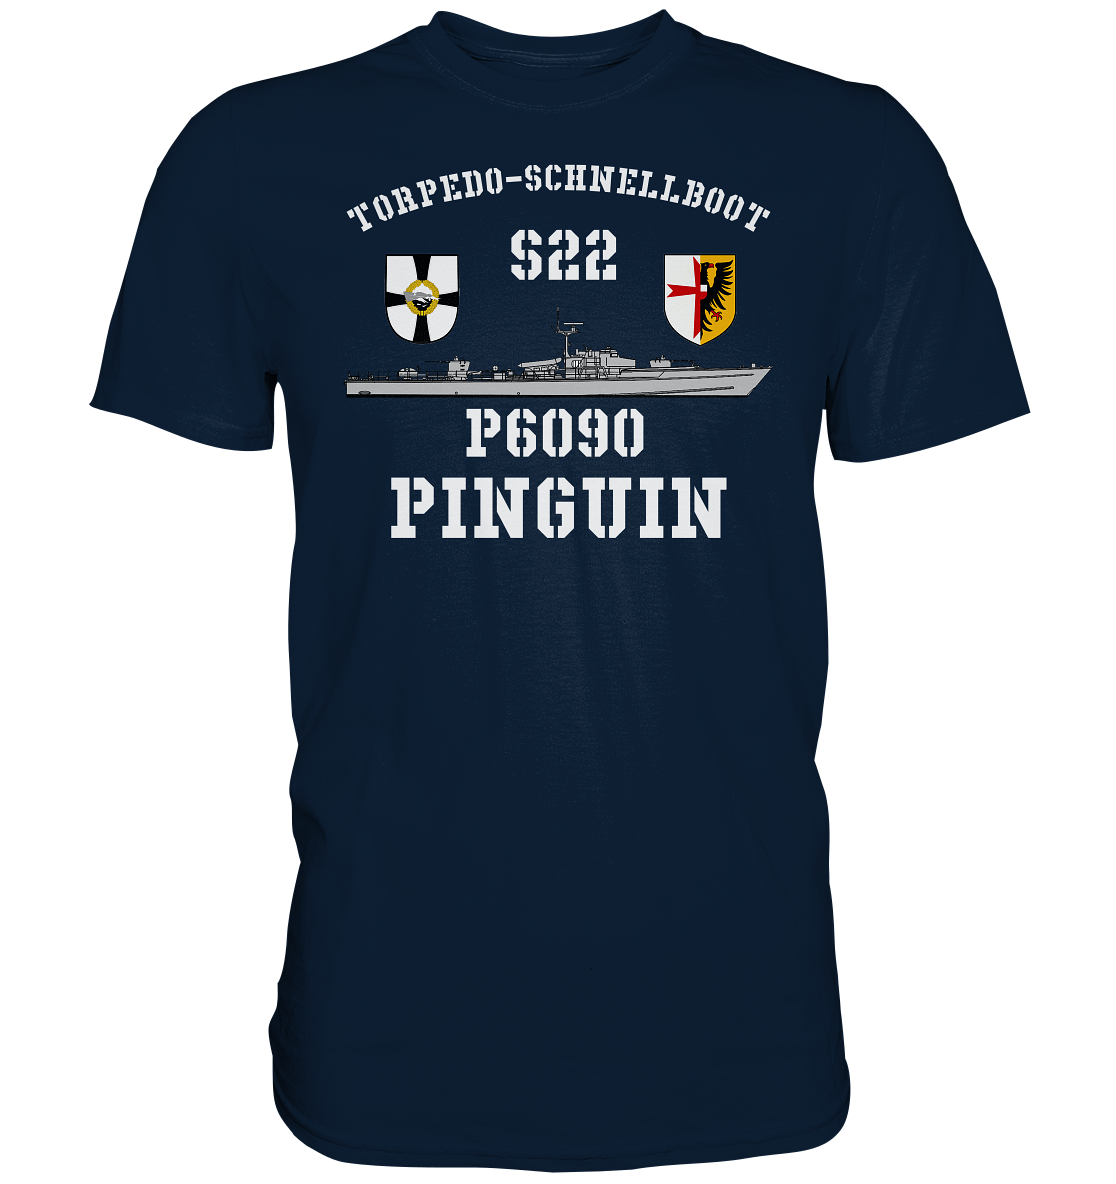 P6090 S22 PINGUIN - Premium Shirt